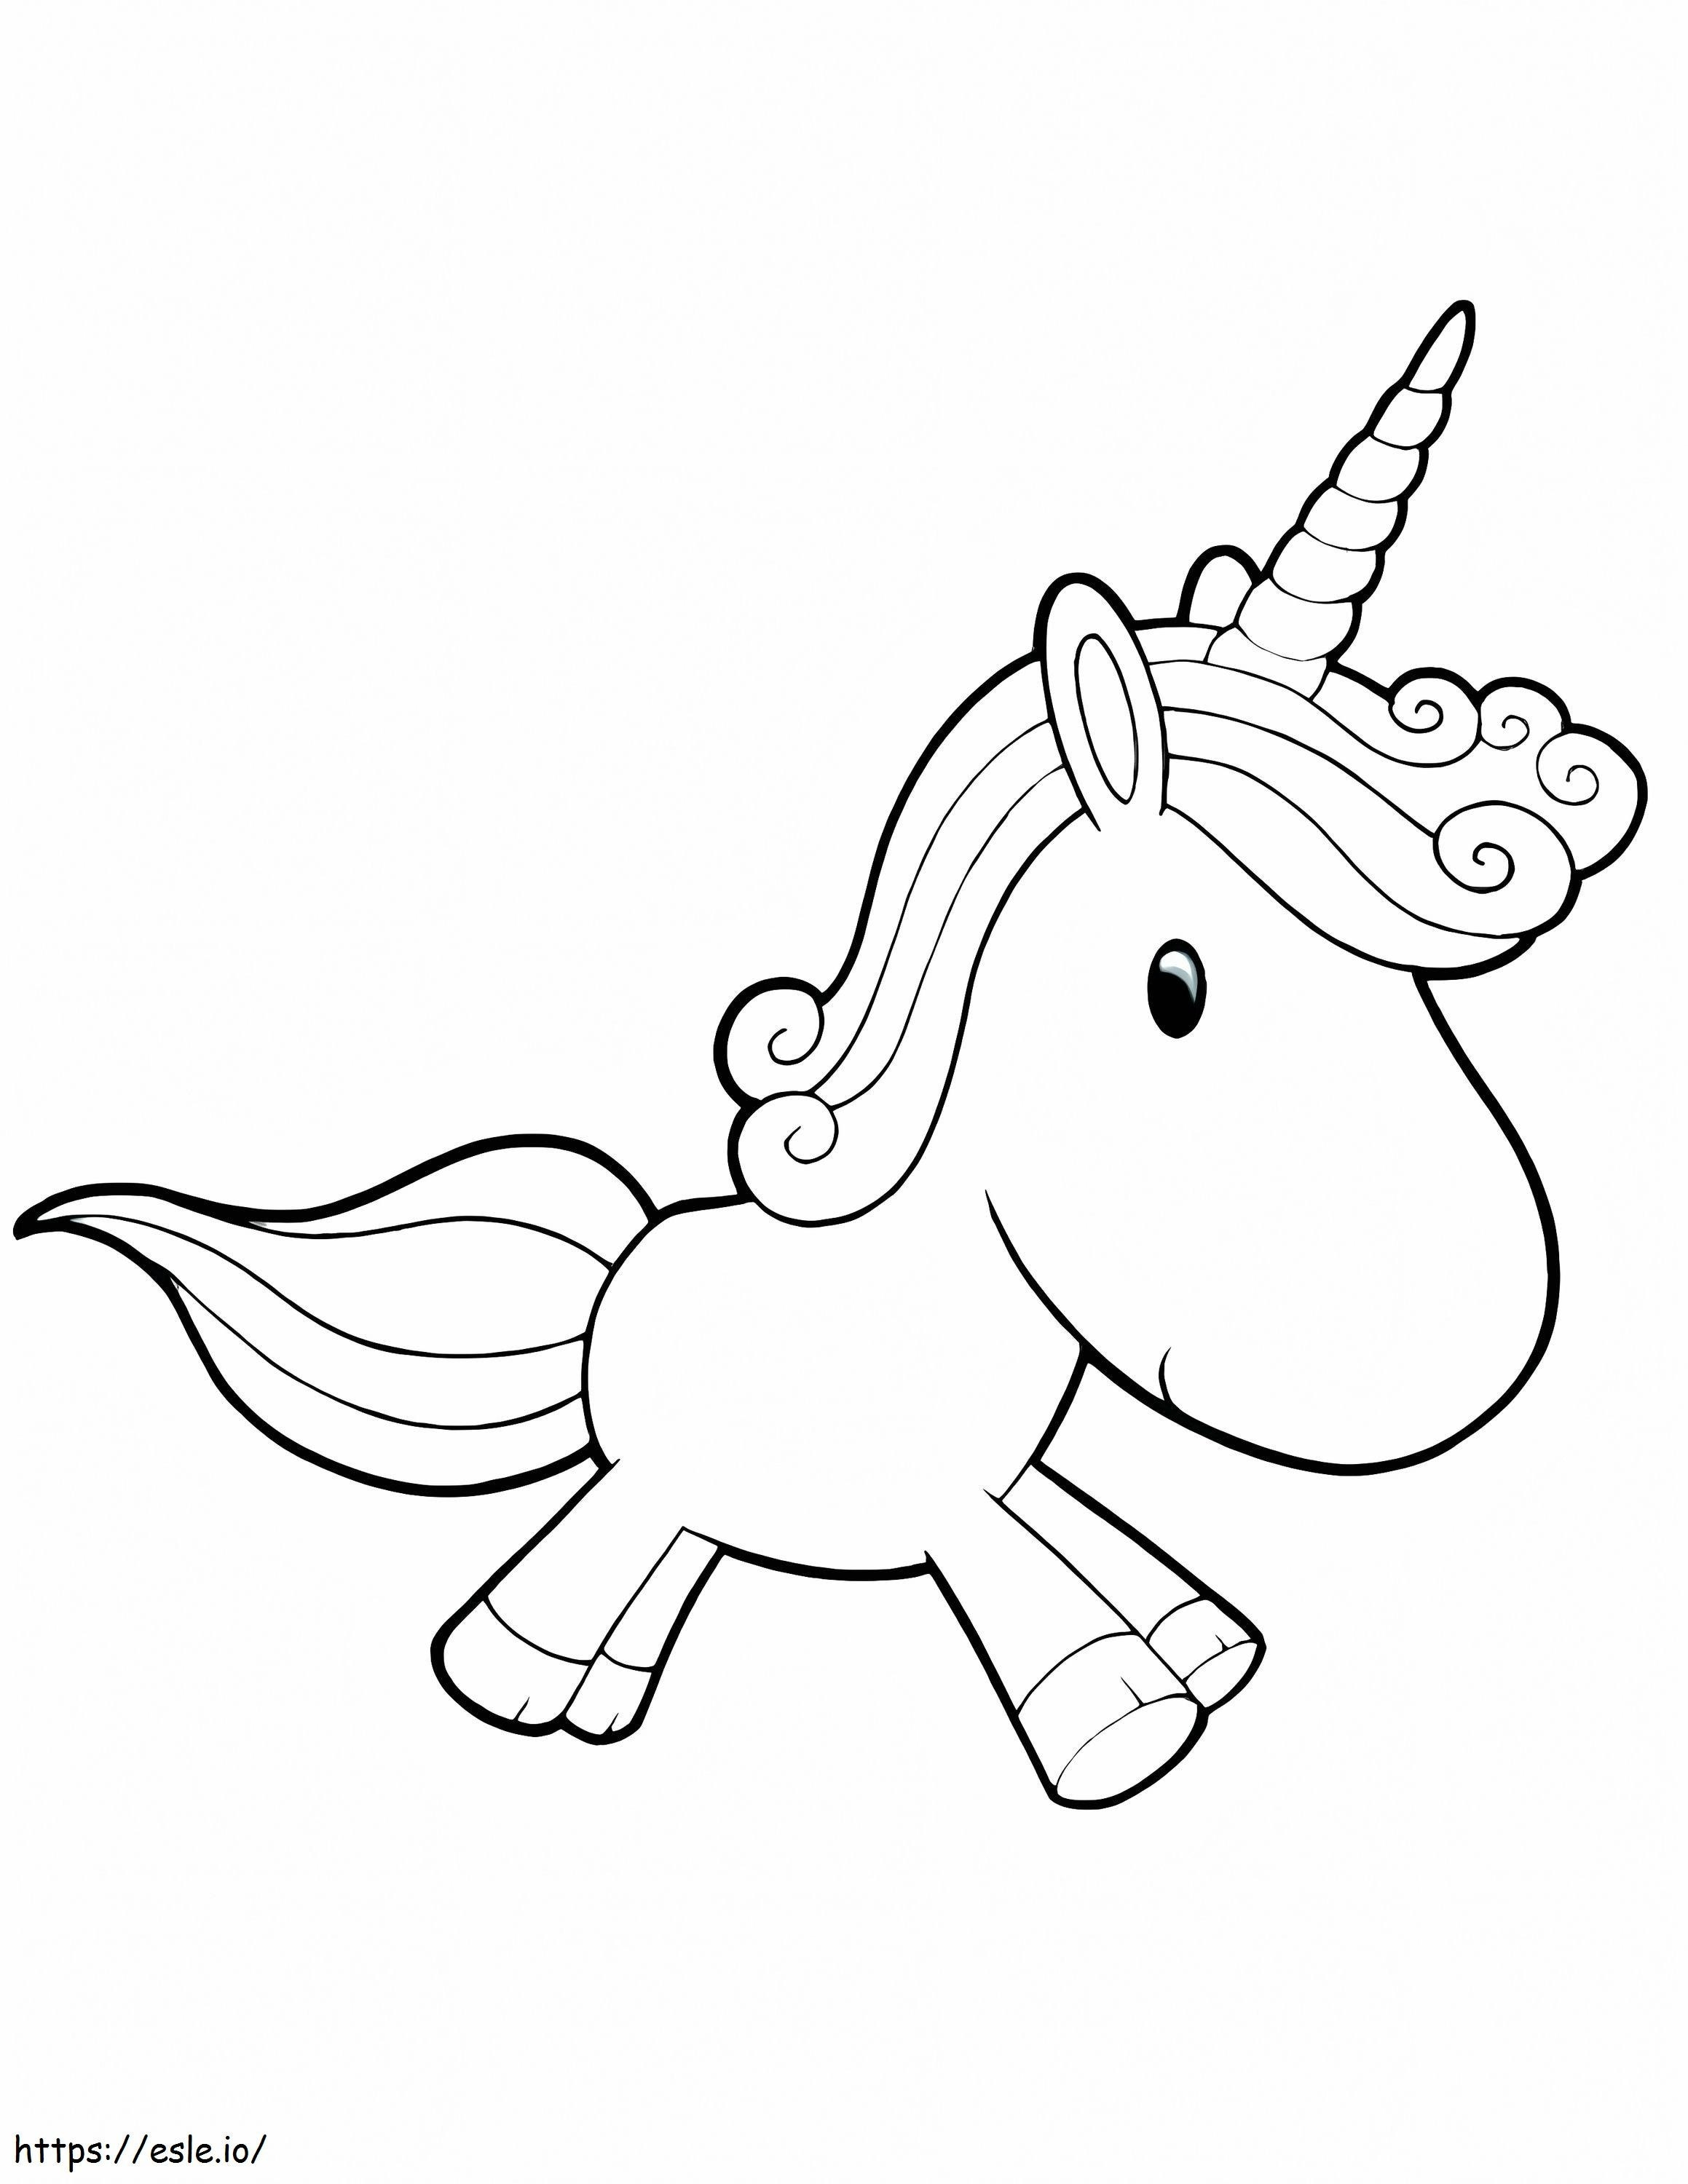 1545874143 Unicorno carino Unicorno carino Unicorno carino Unicorni fatati Unicorno da colorare Stampabile gratis Unicorno carino da colorare